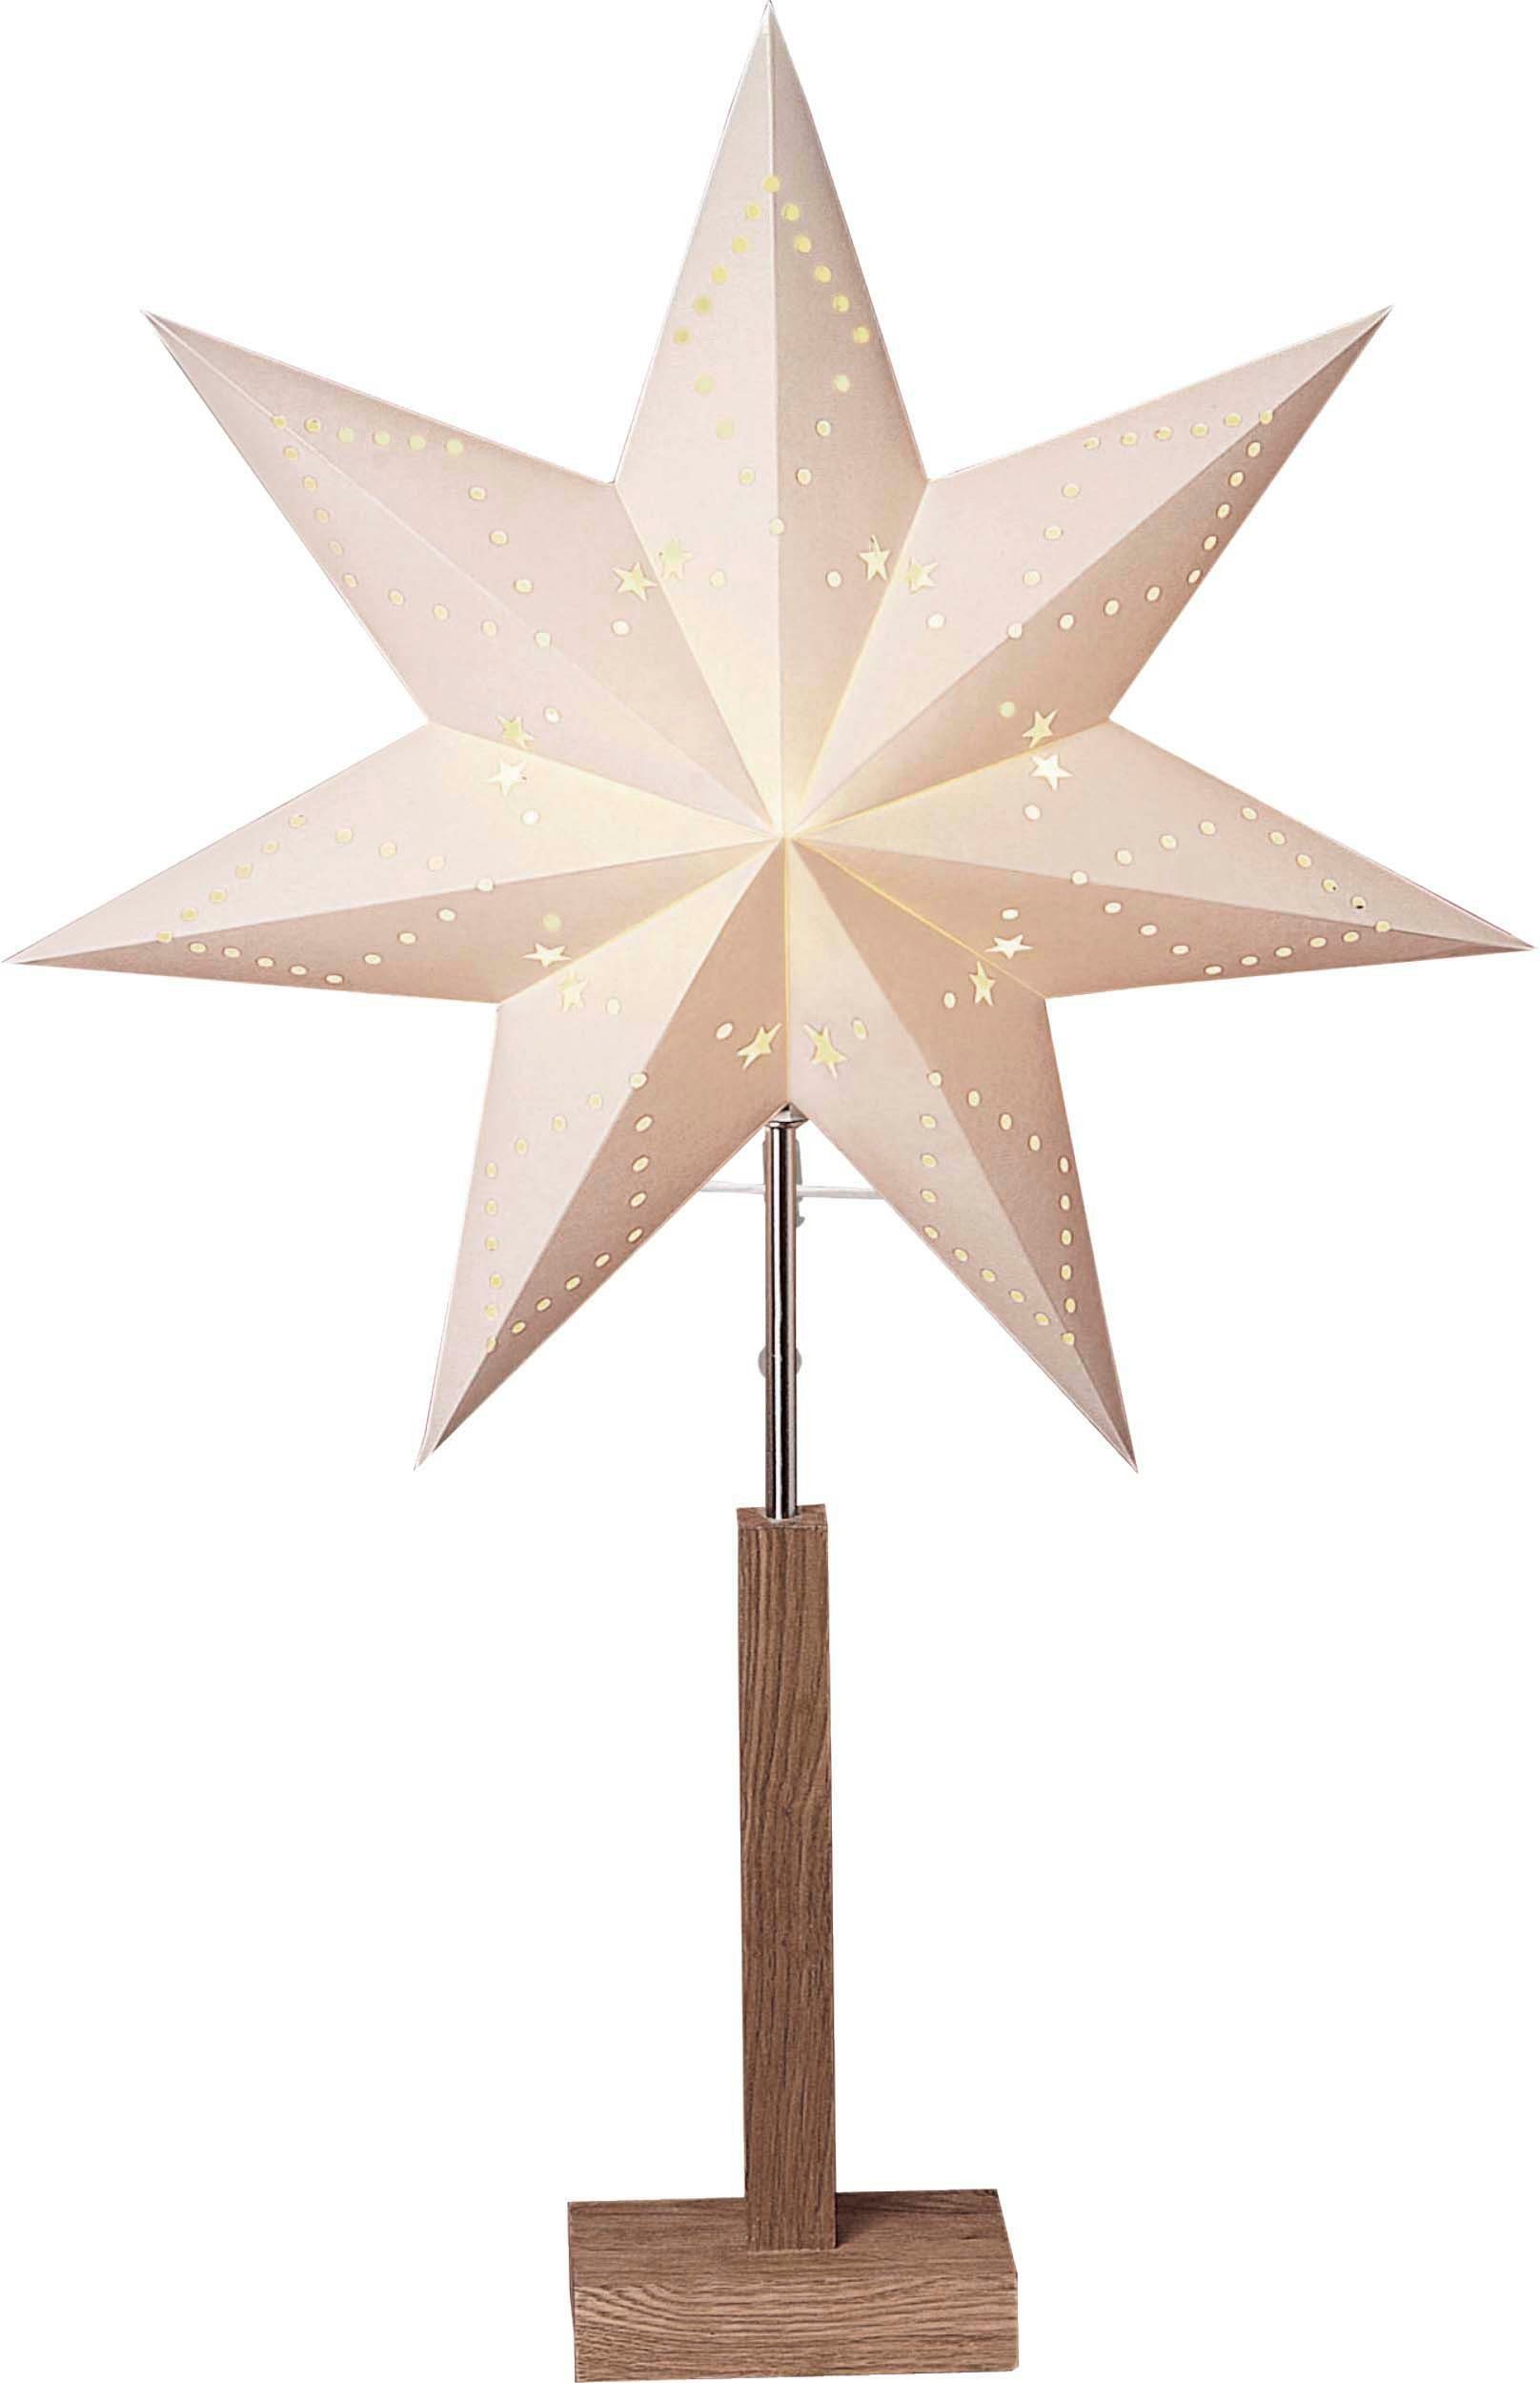 EGLO LED Stern beleuchtet, braun/silberfarben/weiß weiß ohne Kabel Weihnachtsstern, mit Leuchtmittel, Fenster, Tisch Deko-Stern KARO